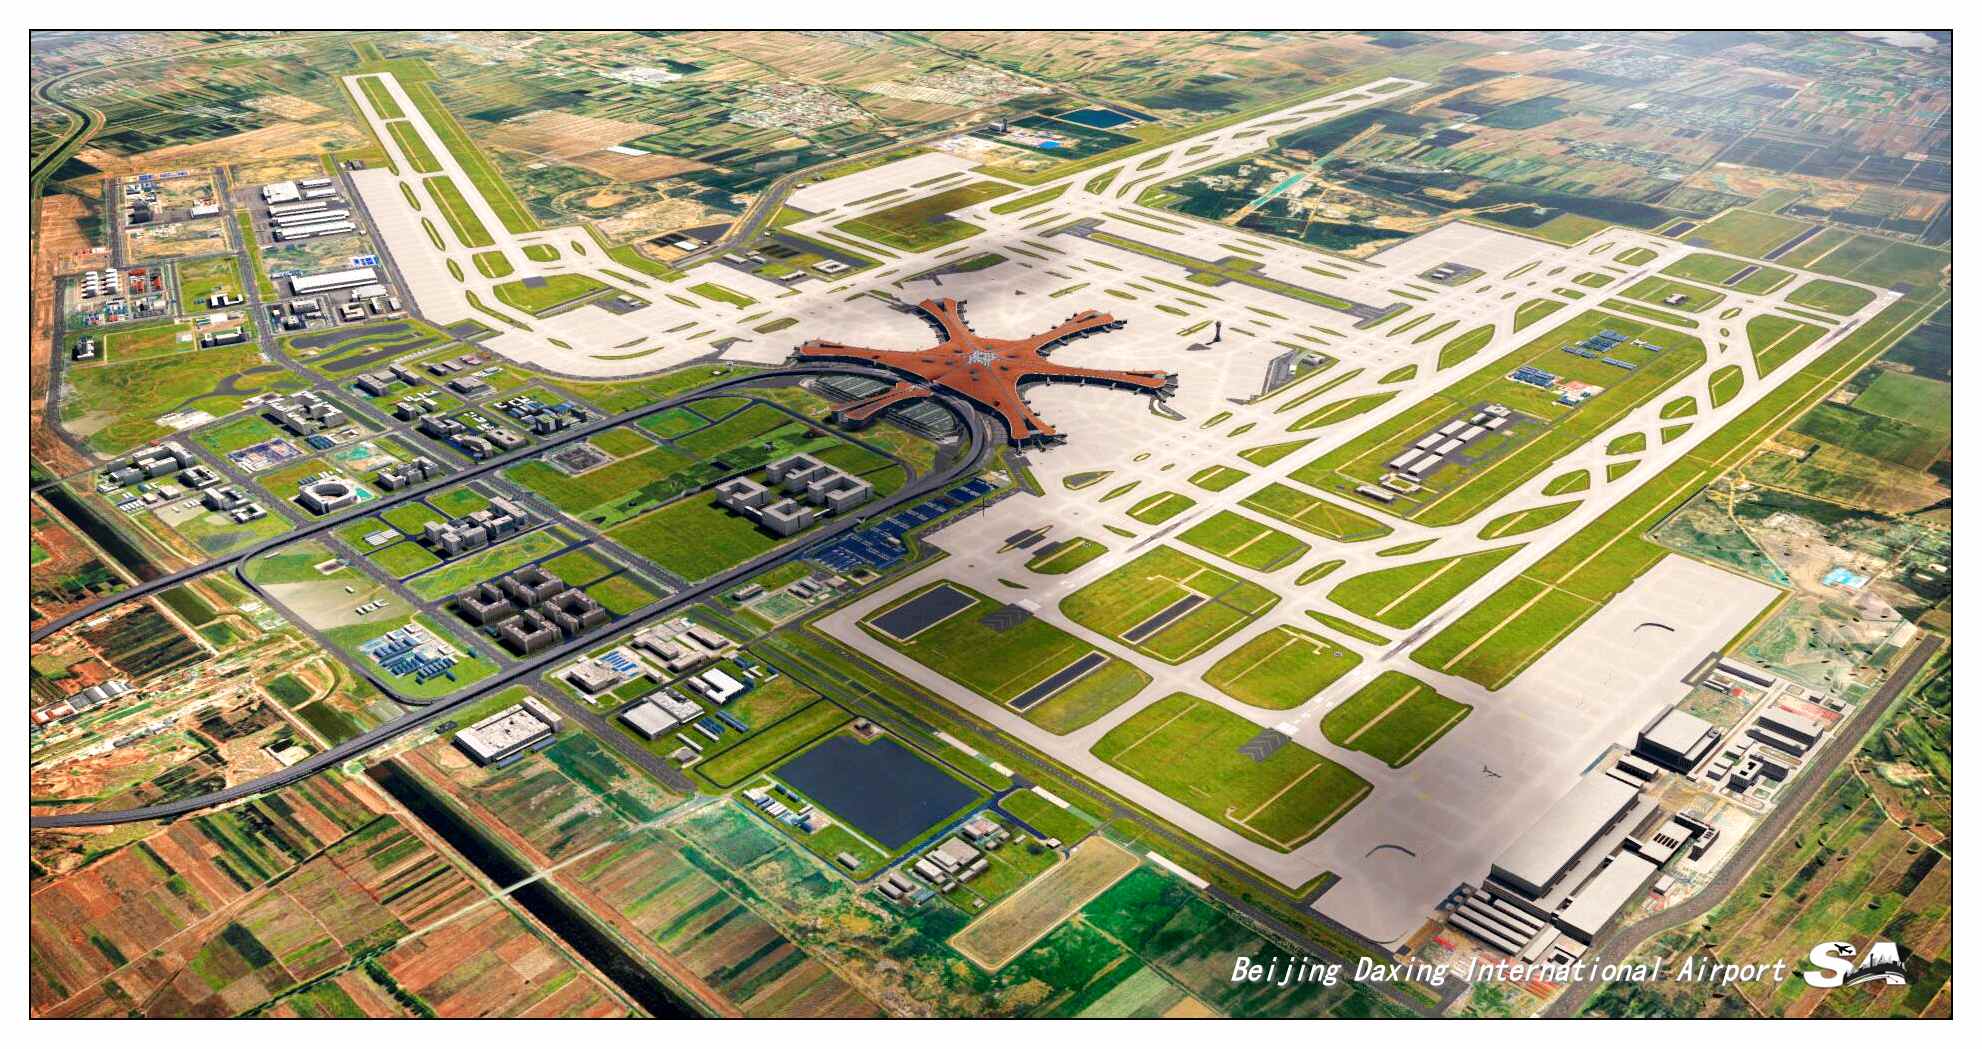 【X-Plane】ZBAD北京大兴国际机场-正式发布-8443 